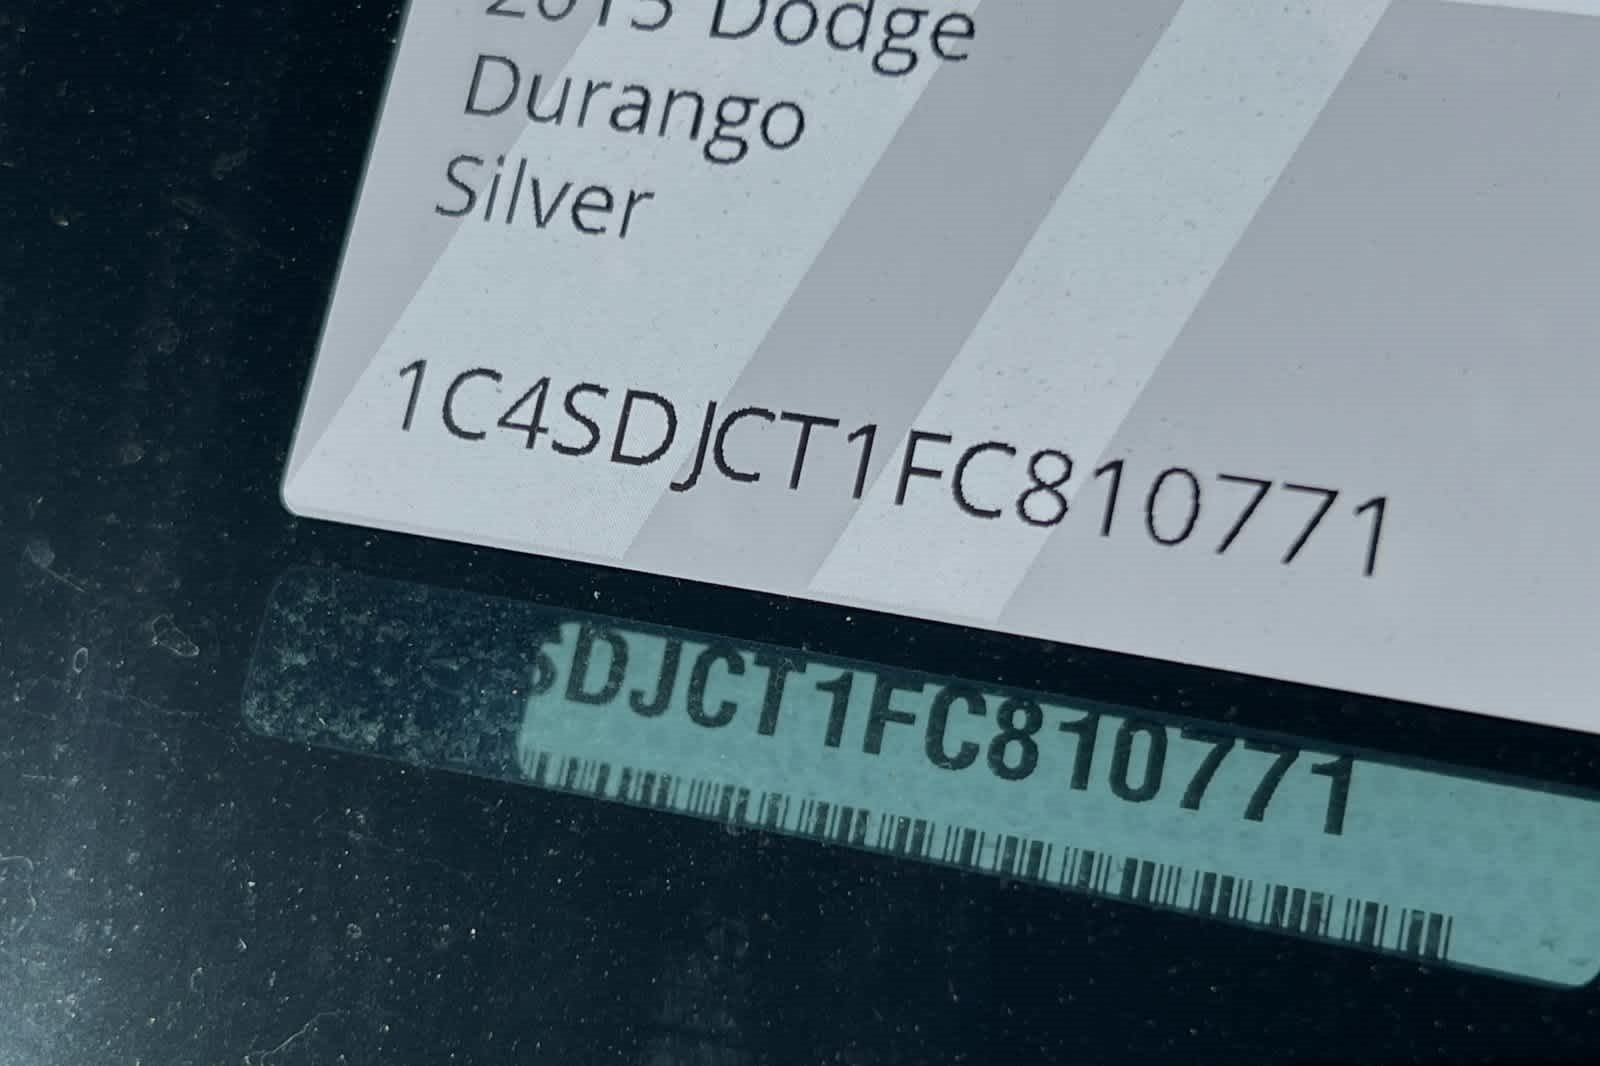 2015 Dodge Durango R/T